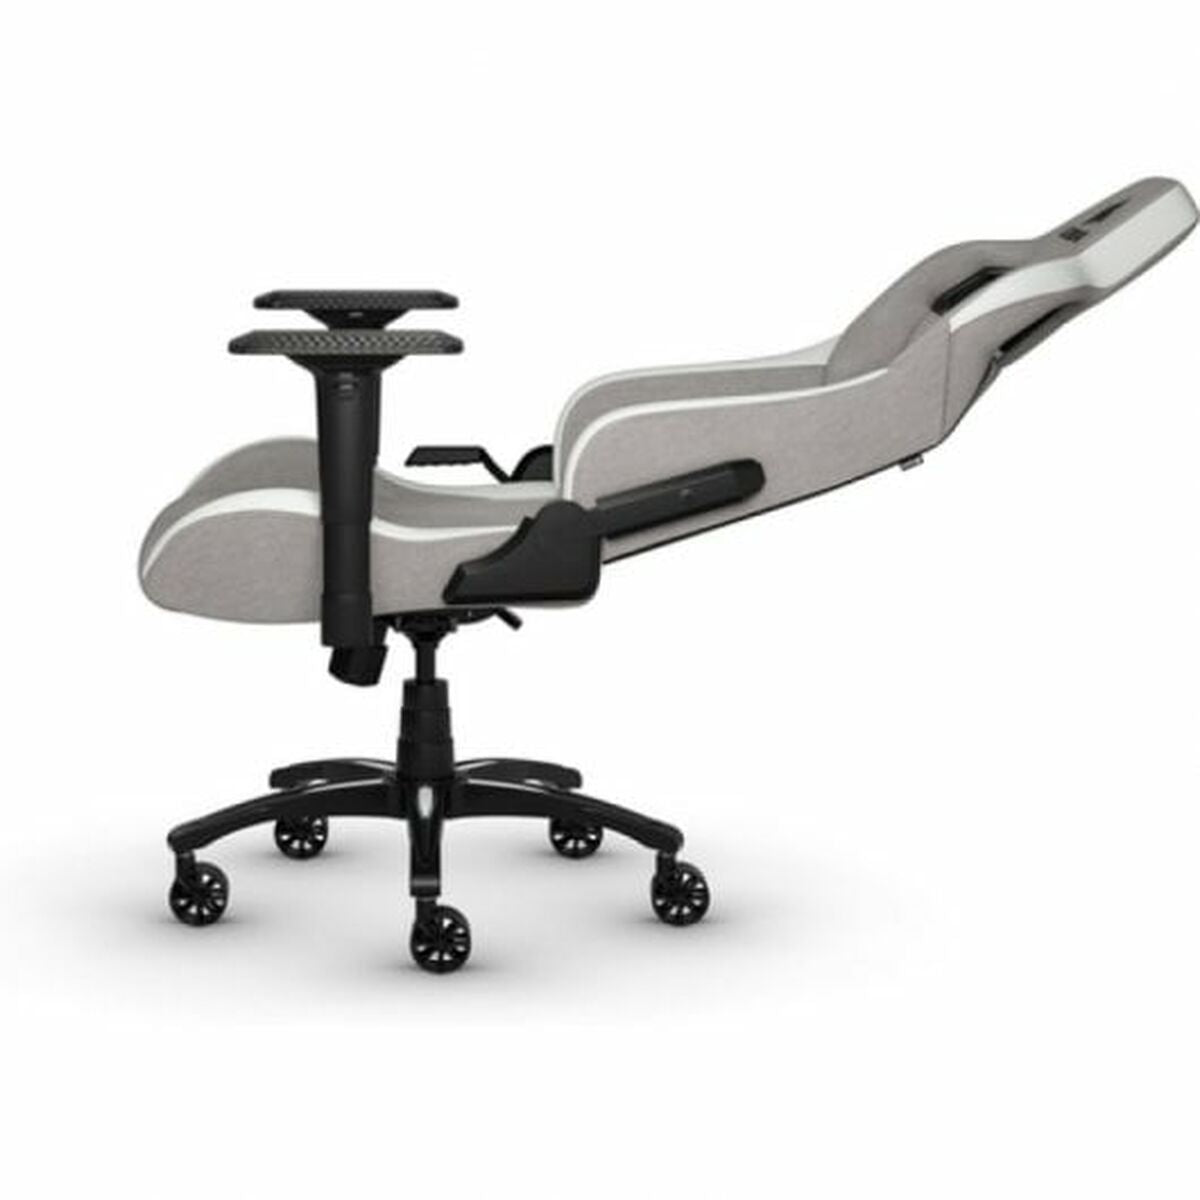 Corsair T3 RUSH Fabric Gaming Chair White/Grey